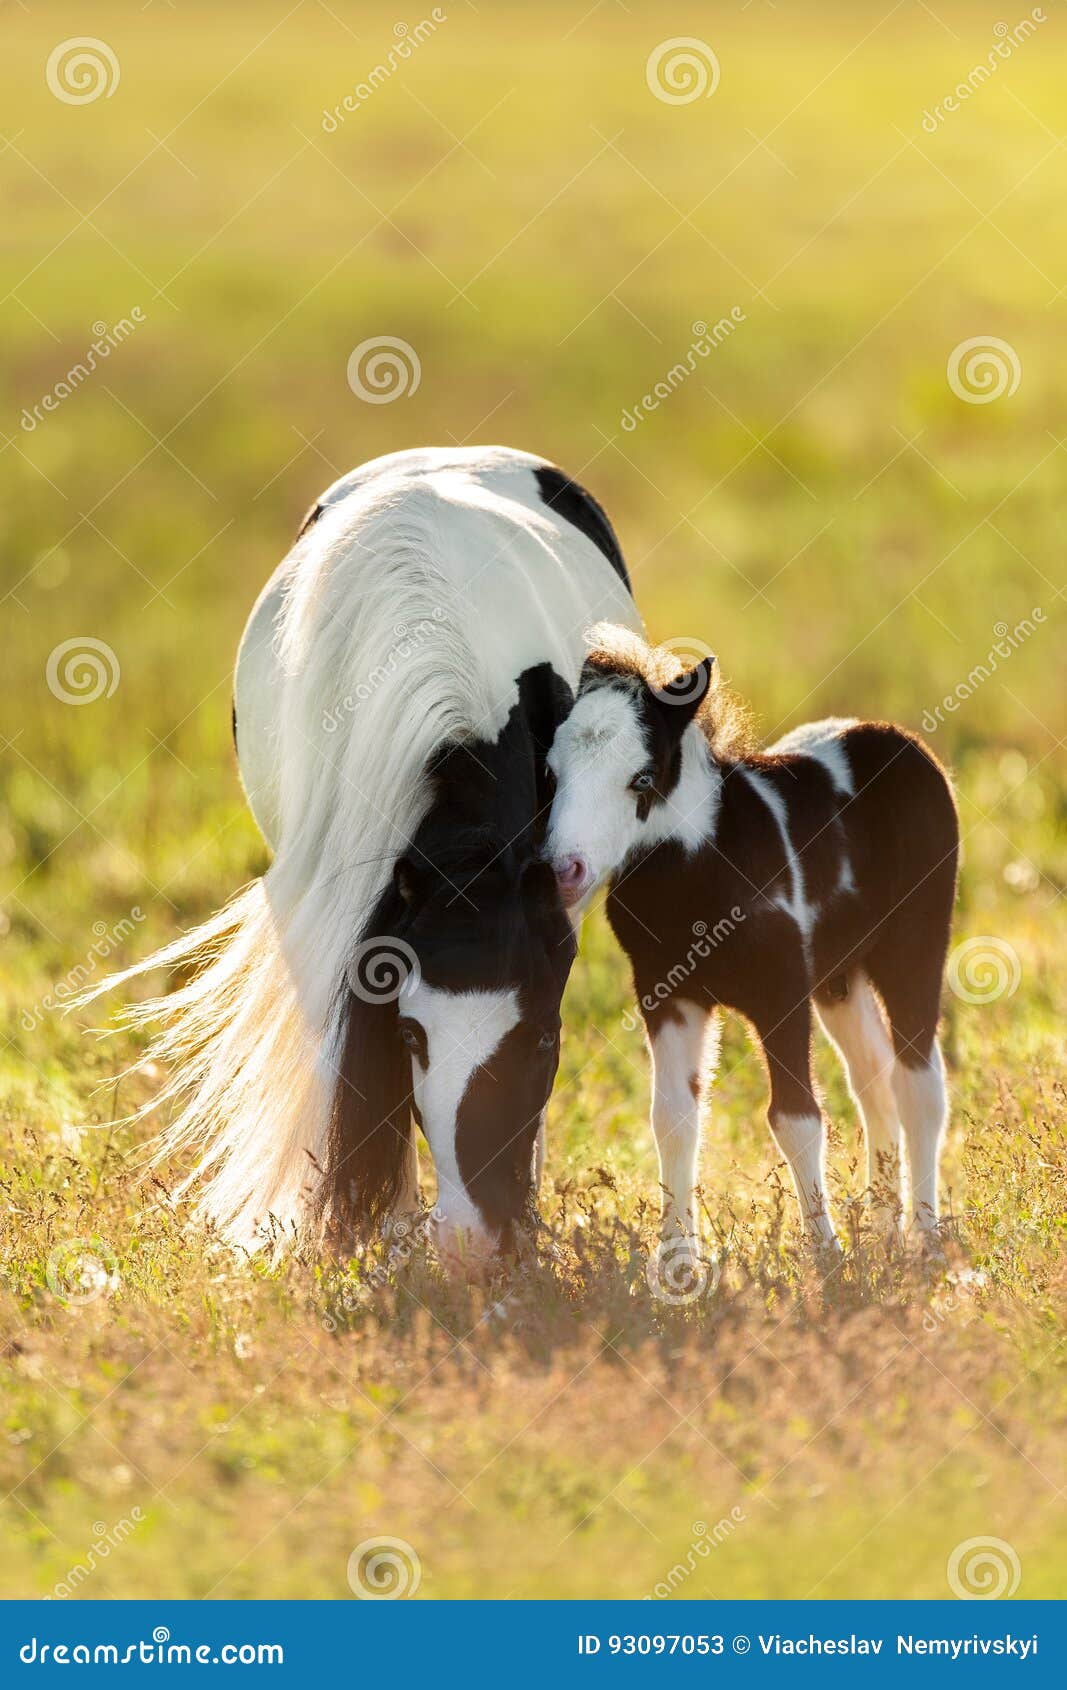 1x Poesiebilder Oblaten Pferde 199 Glanzbilder Wildpferde braun Fohlen Pony